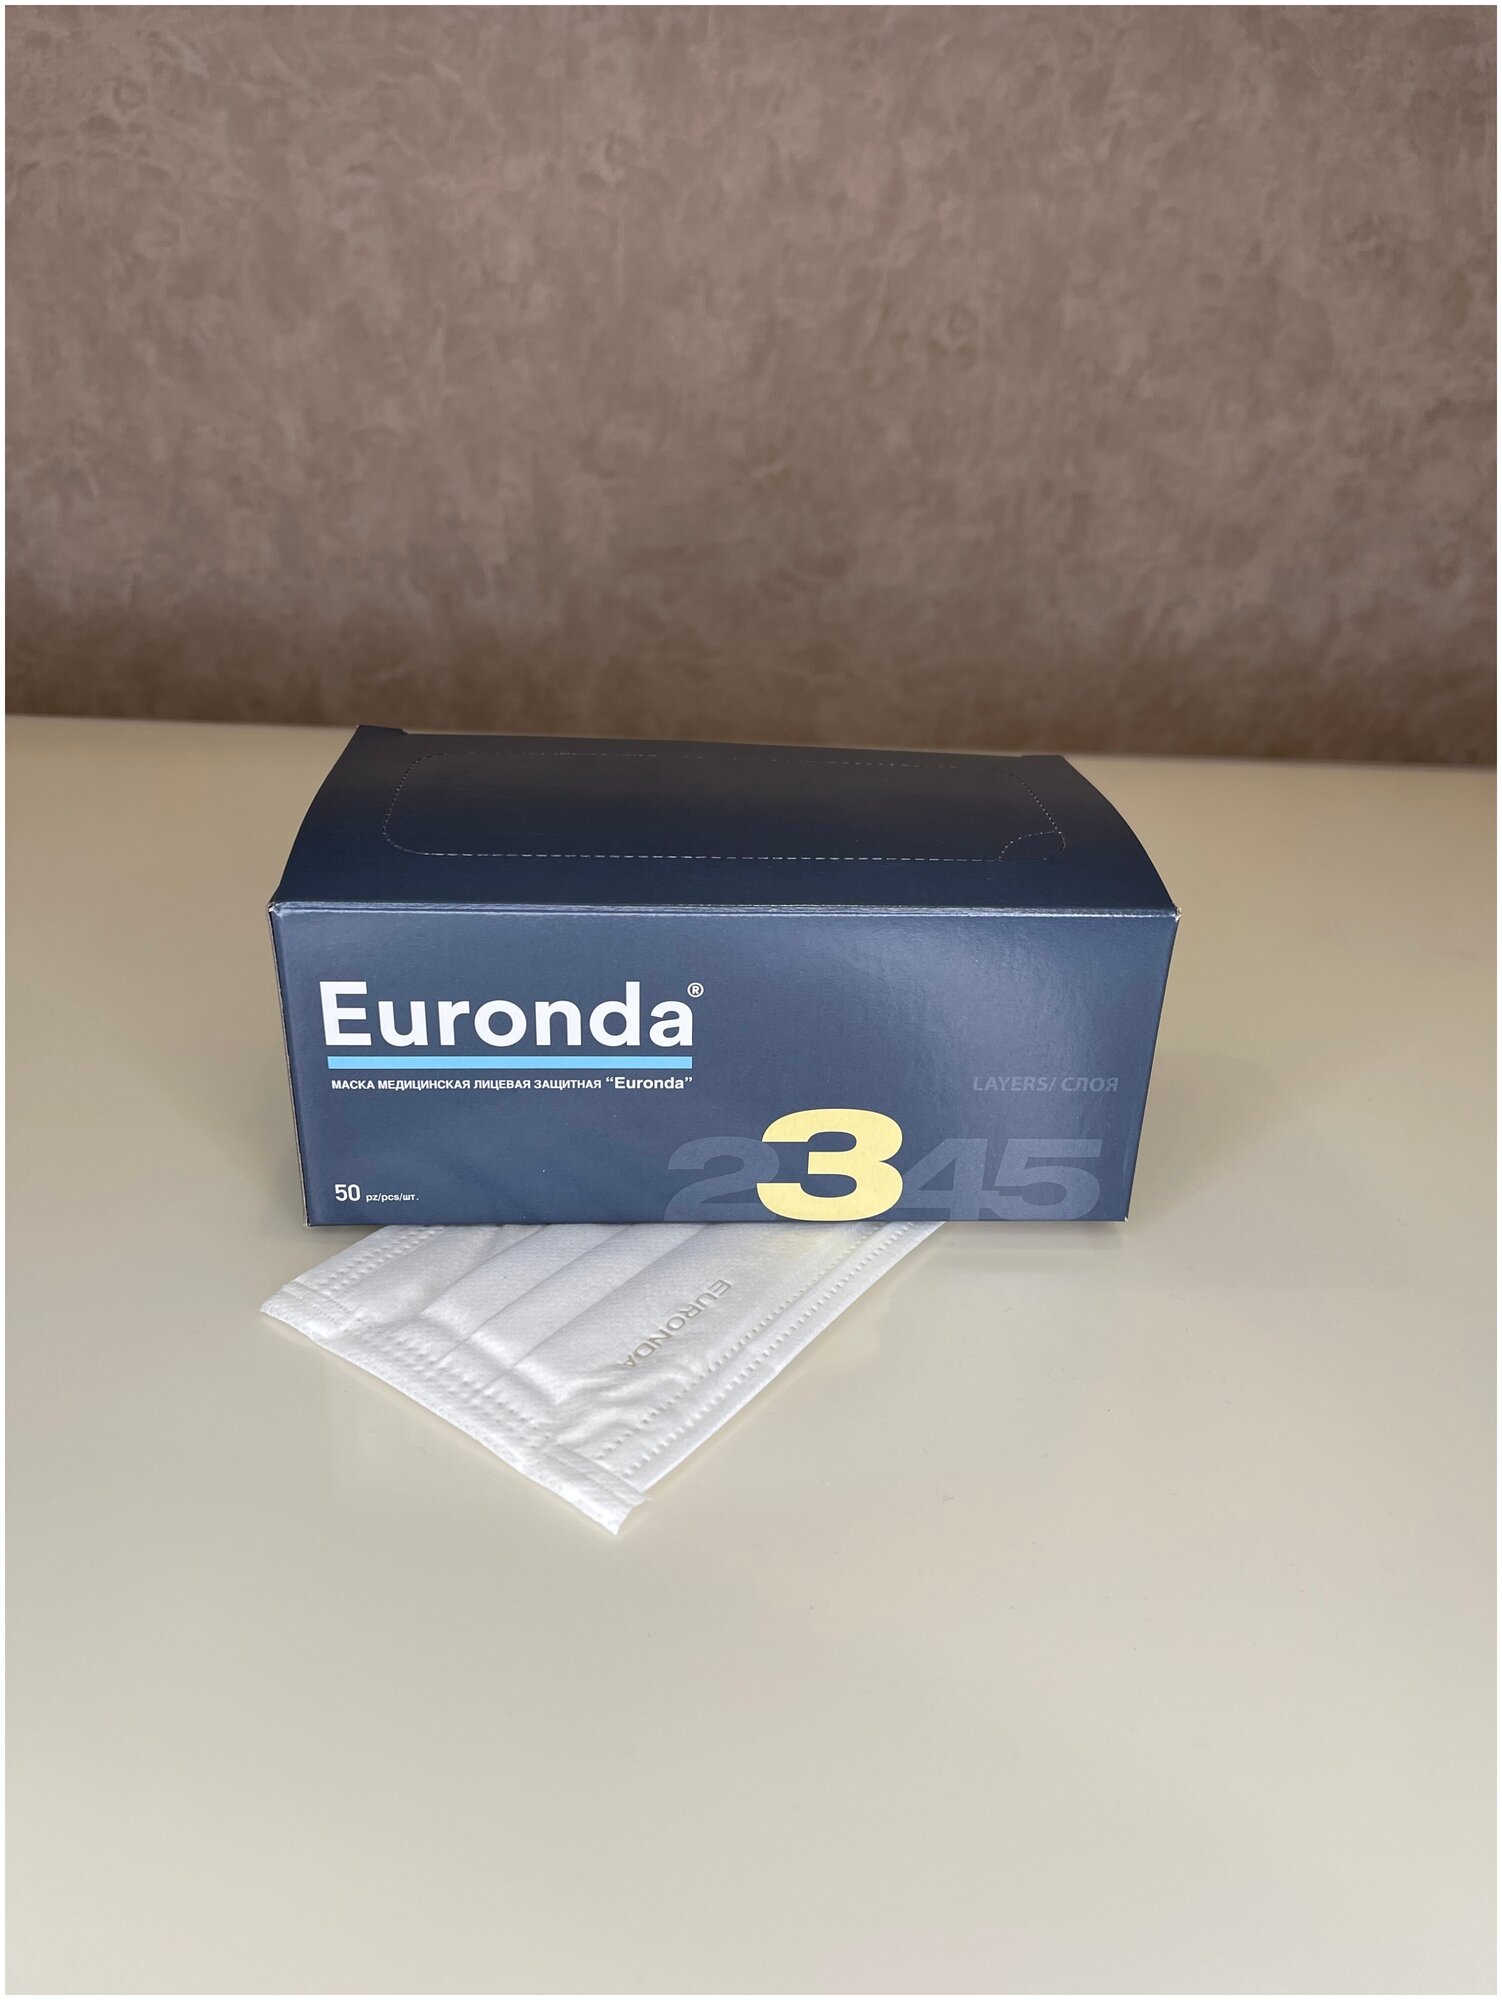 Маска медицинская Euronda ( Еуронда / Евронда ) Monoart трехслойная - белый, 50 шт. в упаковке